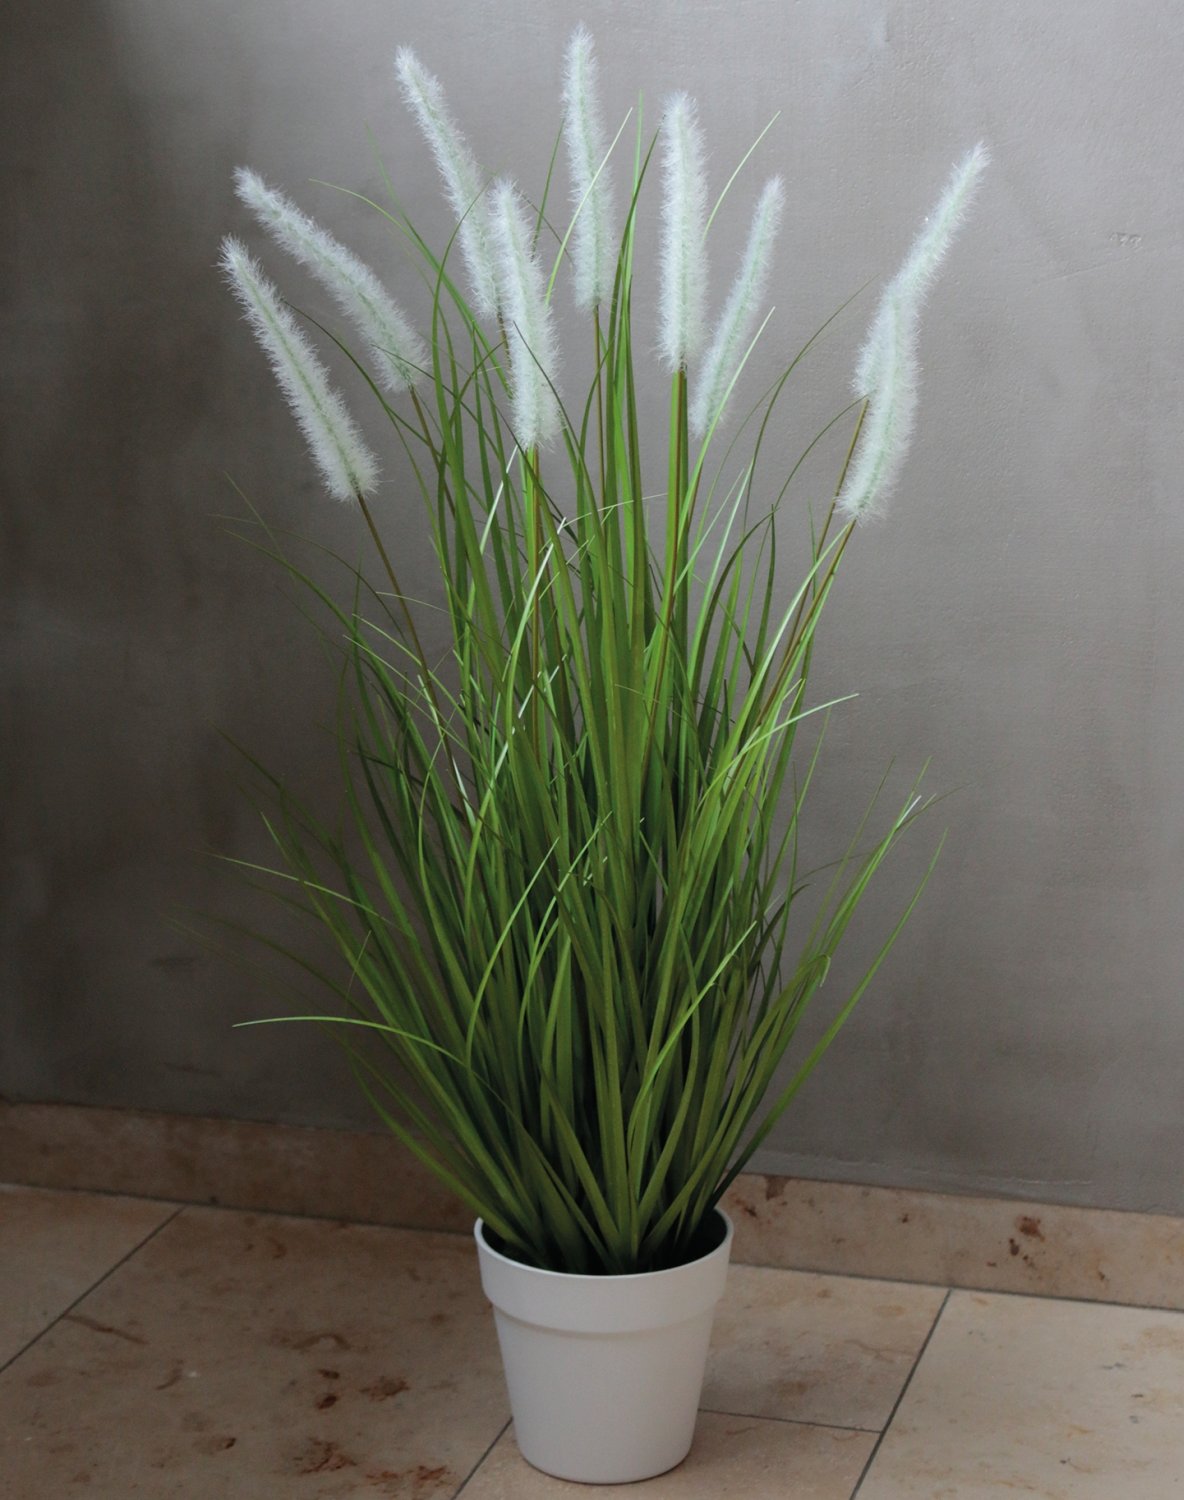 Künstlicher Grasbüschel 'Lampenputzergras', getopft, 76 cm, grün-weiß